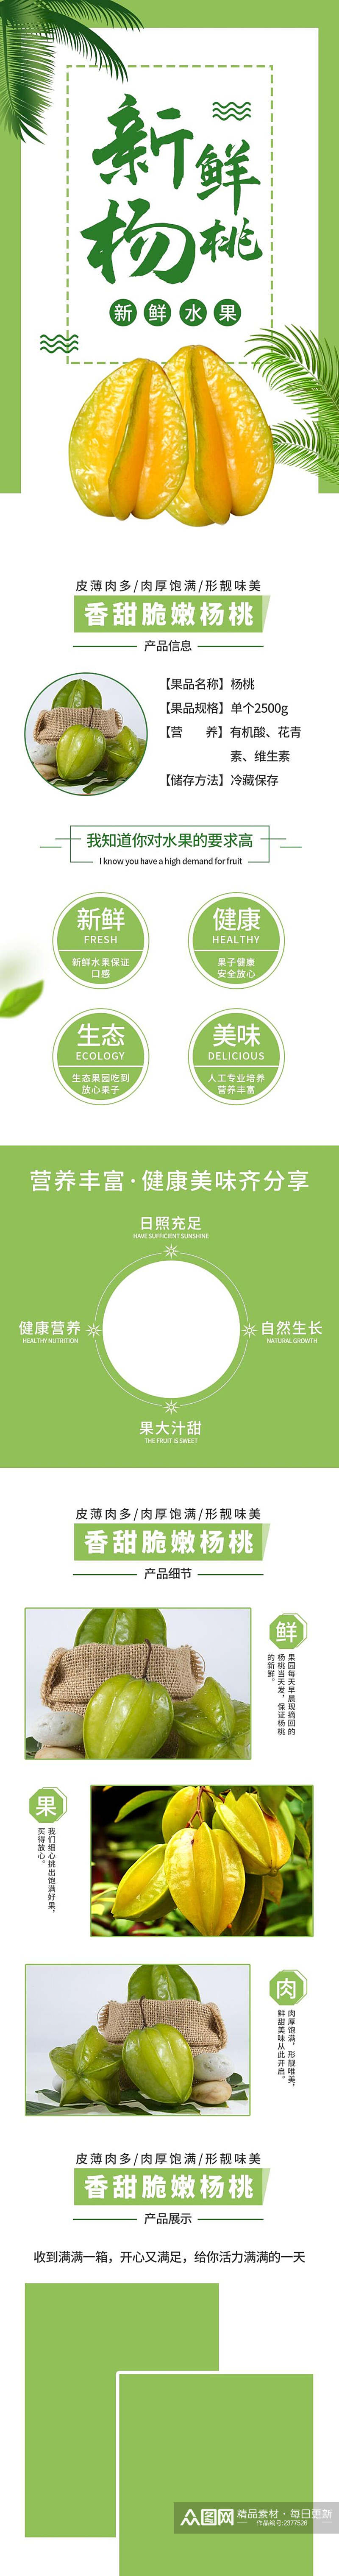 清新绿色新鲜杨桃食品电商详情页素材